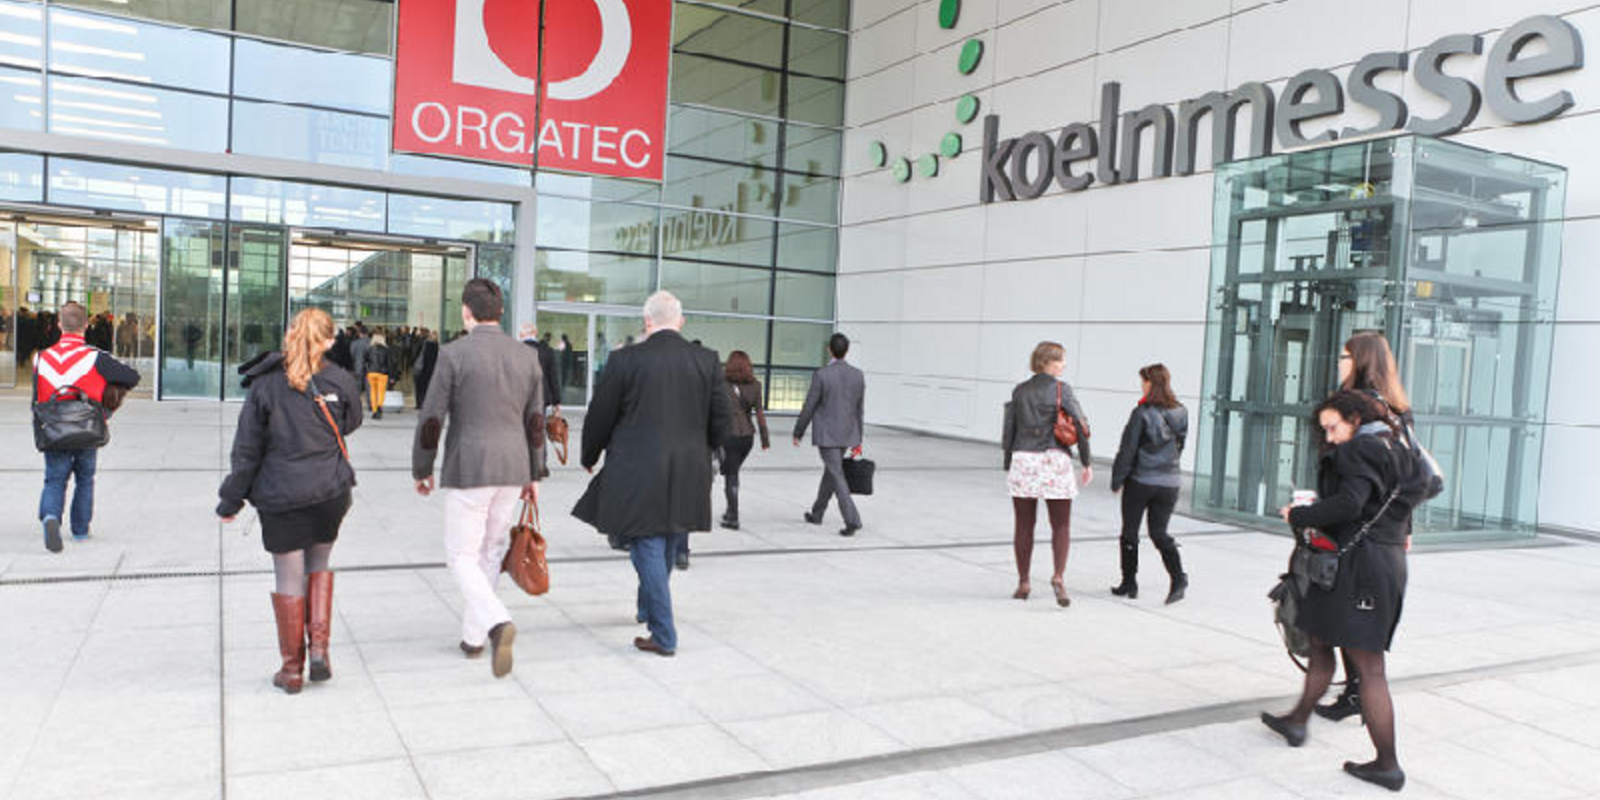 Eingang Orgatec 2014 in Köln Bild 1